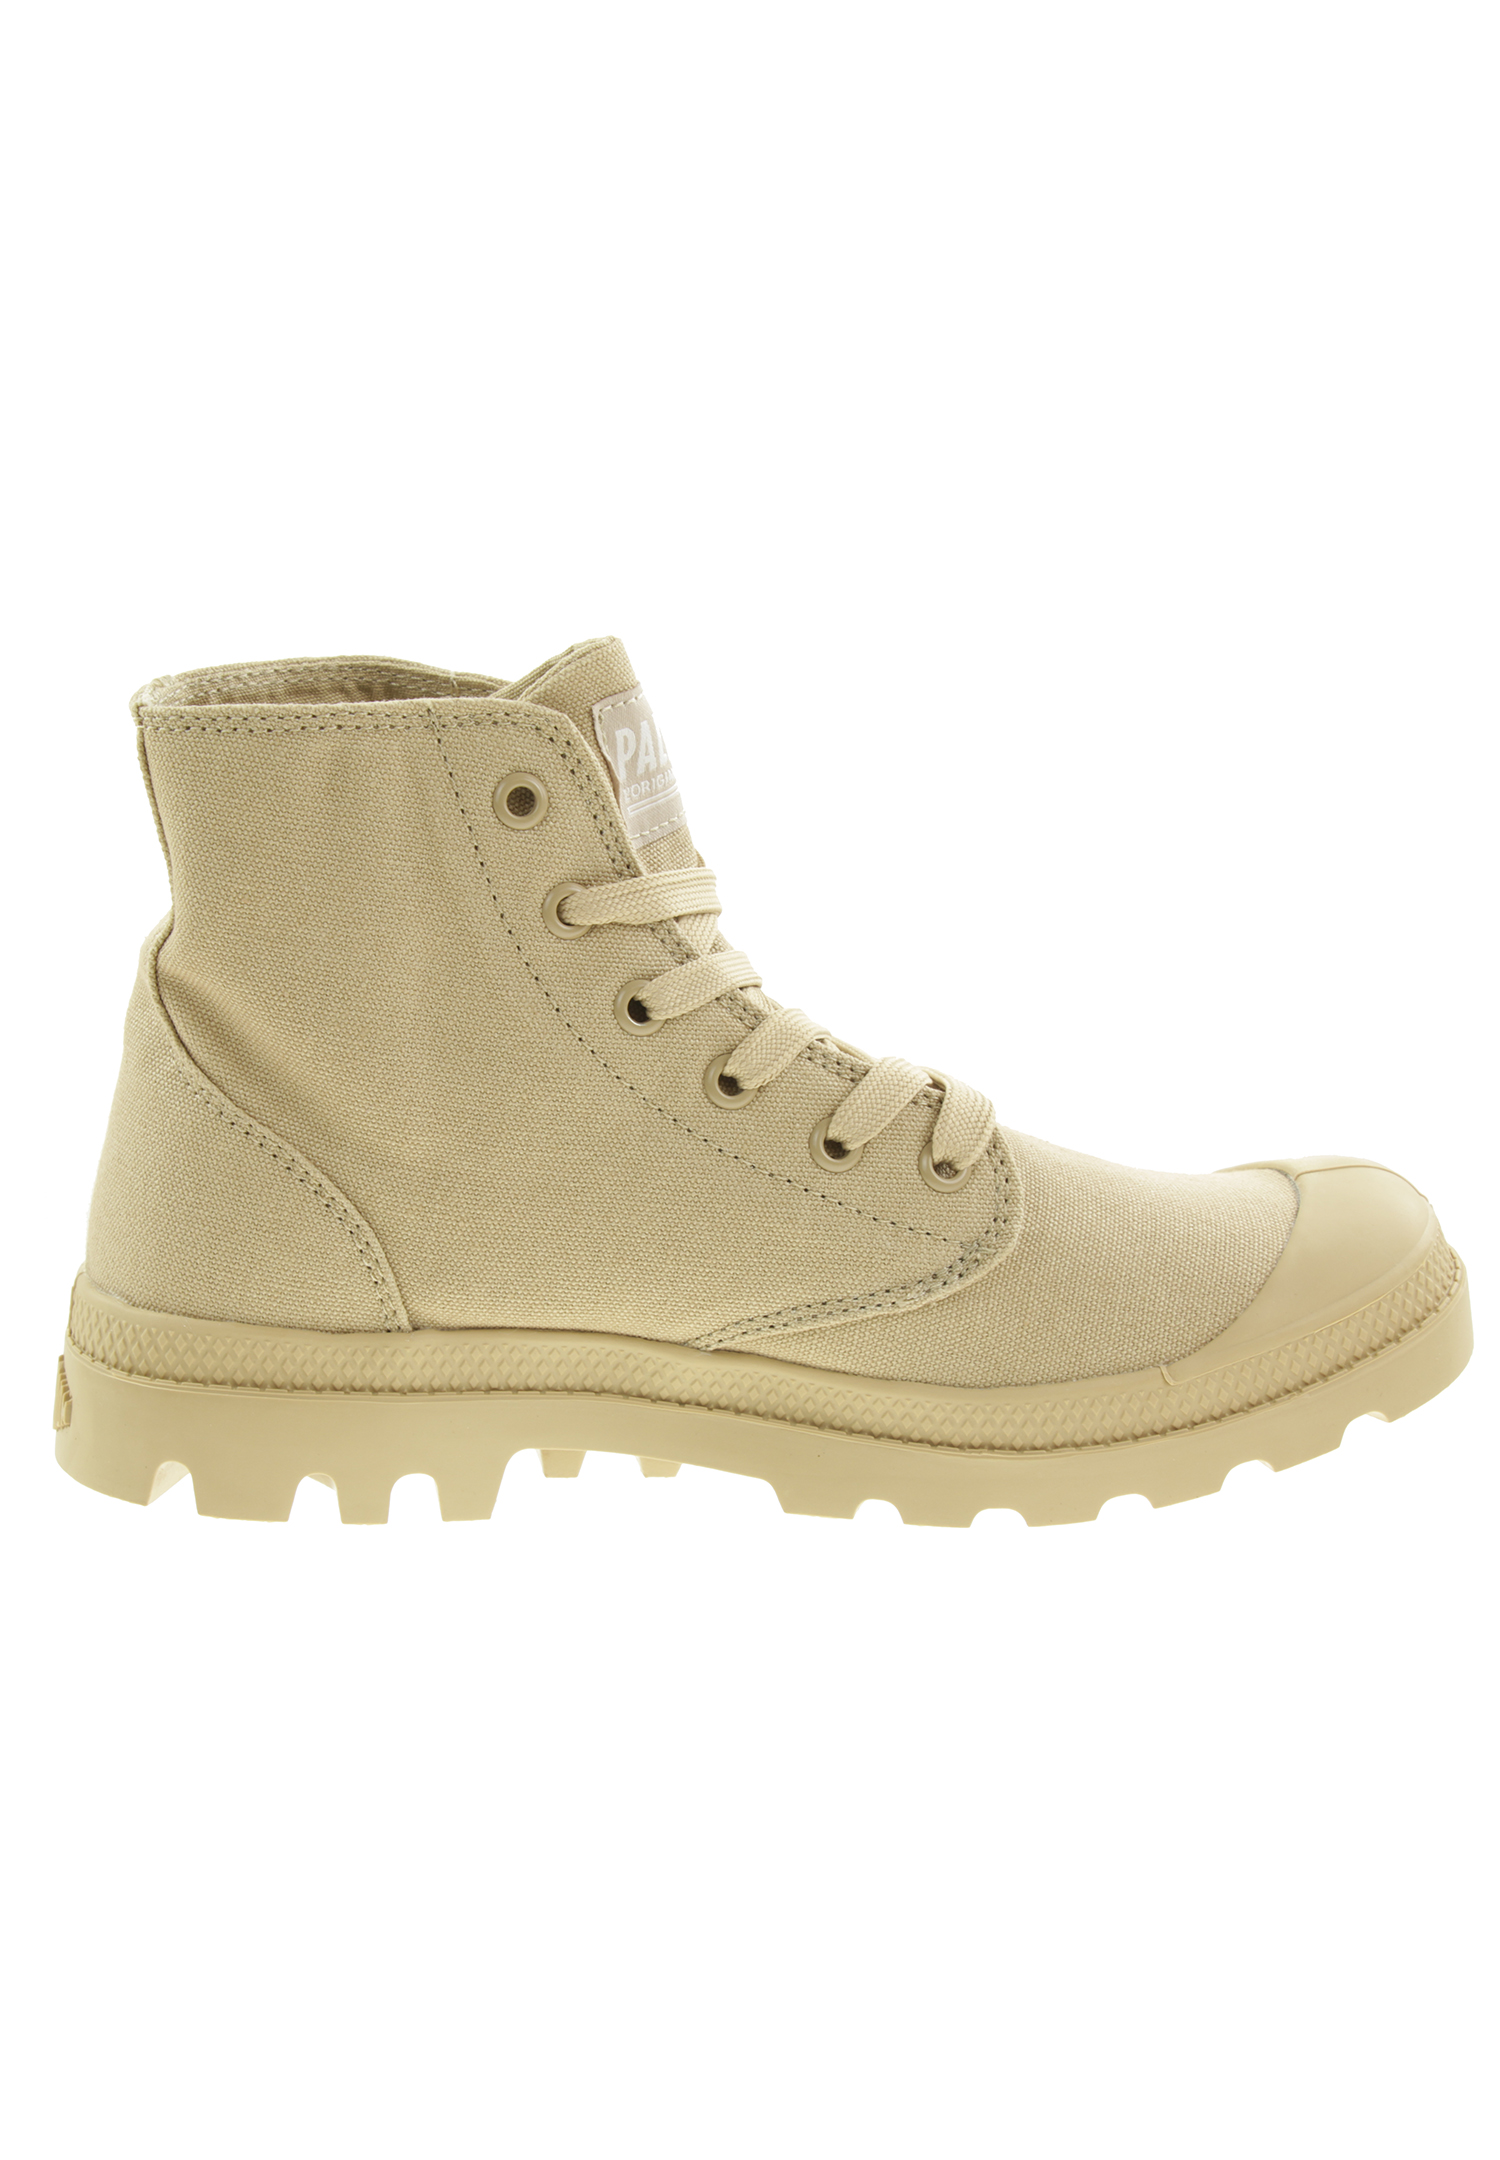 PALLADIUM Unisex Pampa Hi Mono Boots Stiefelette 73089 beige